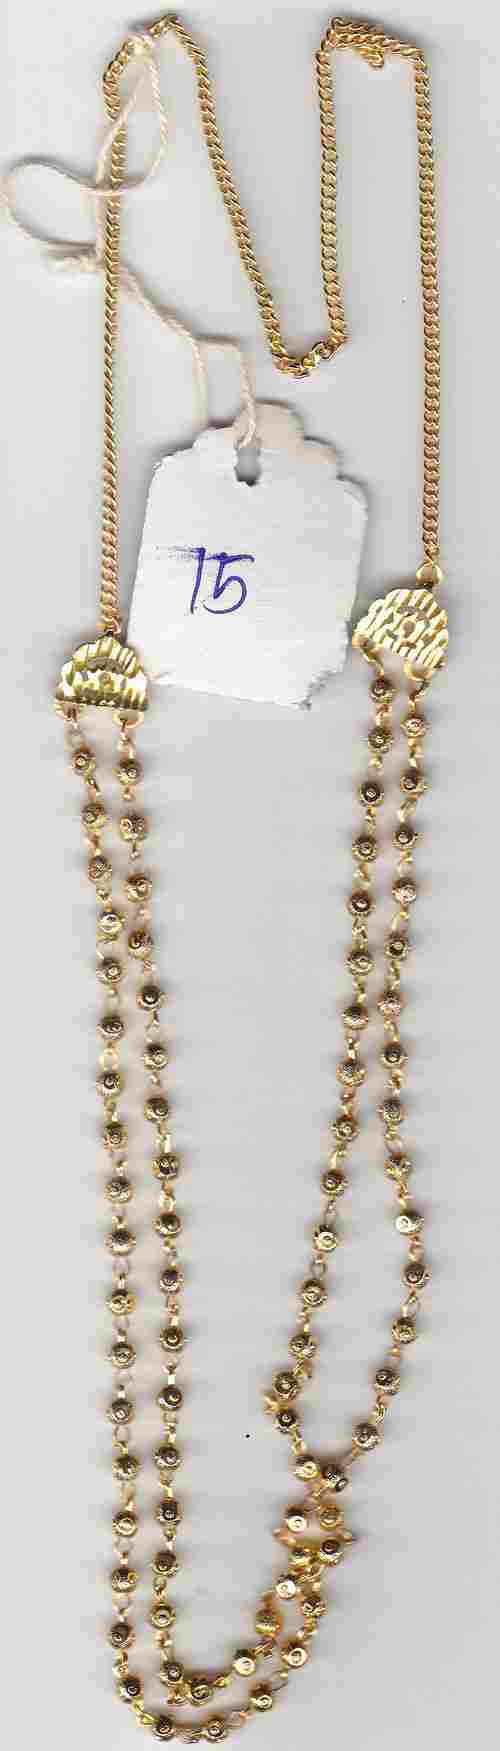 4mm Bindi Beads 2 Line Chain